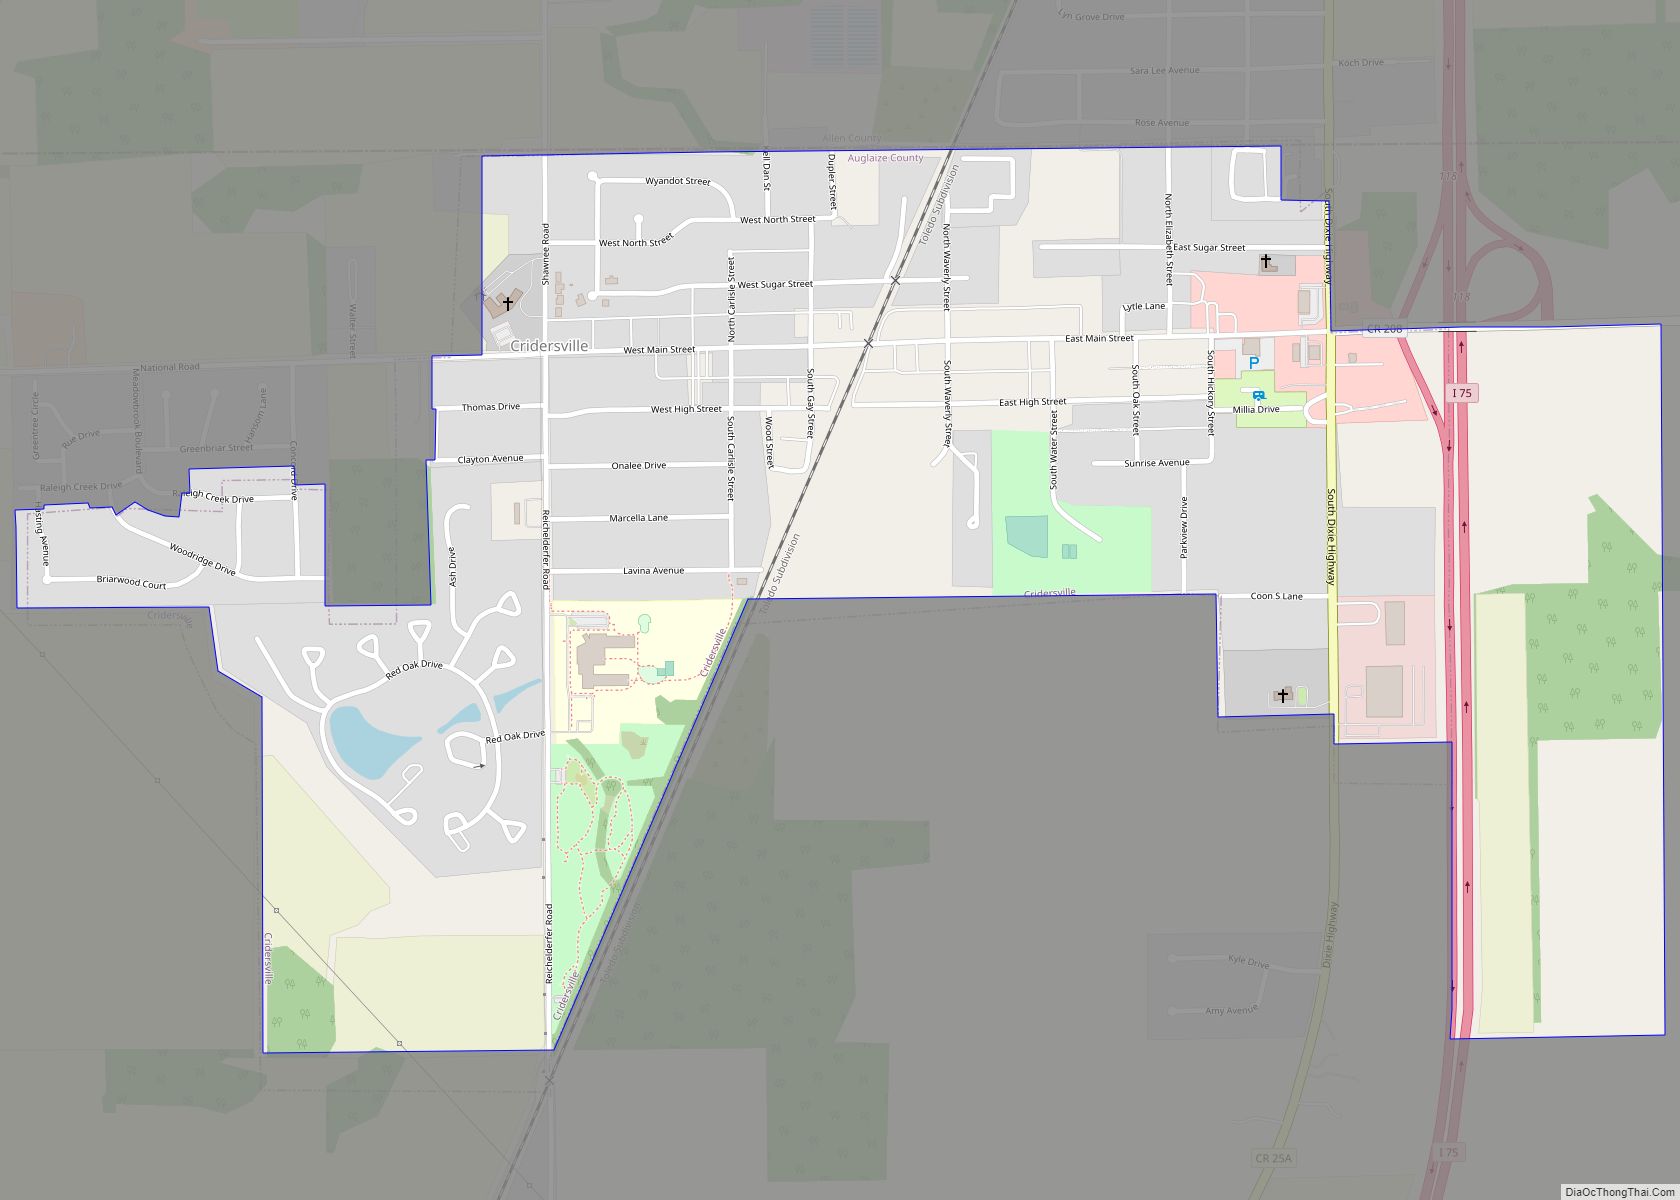 Map of Cridersville village